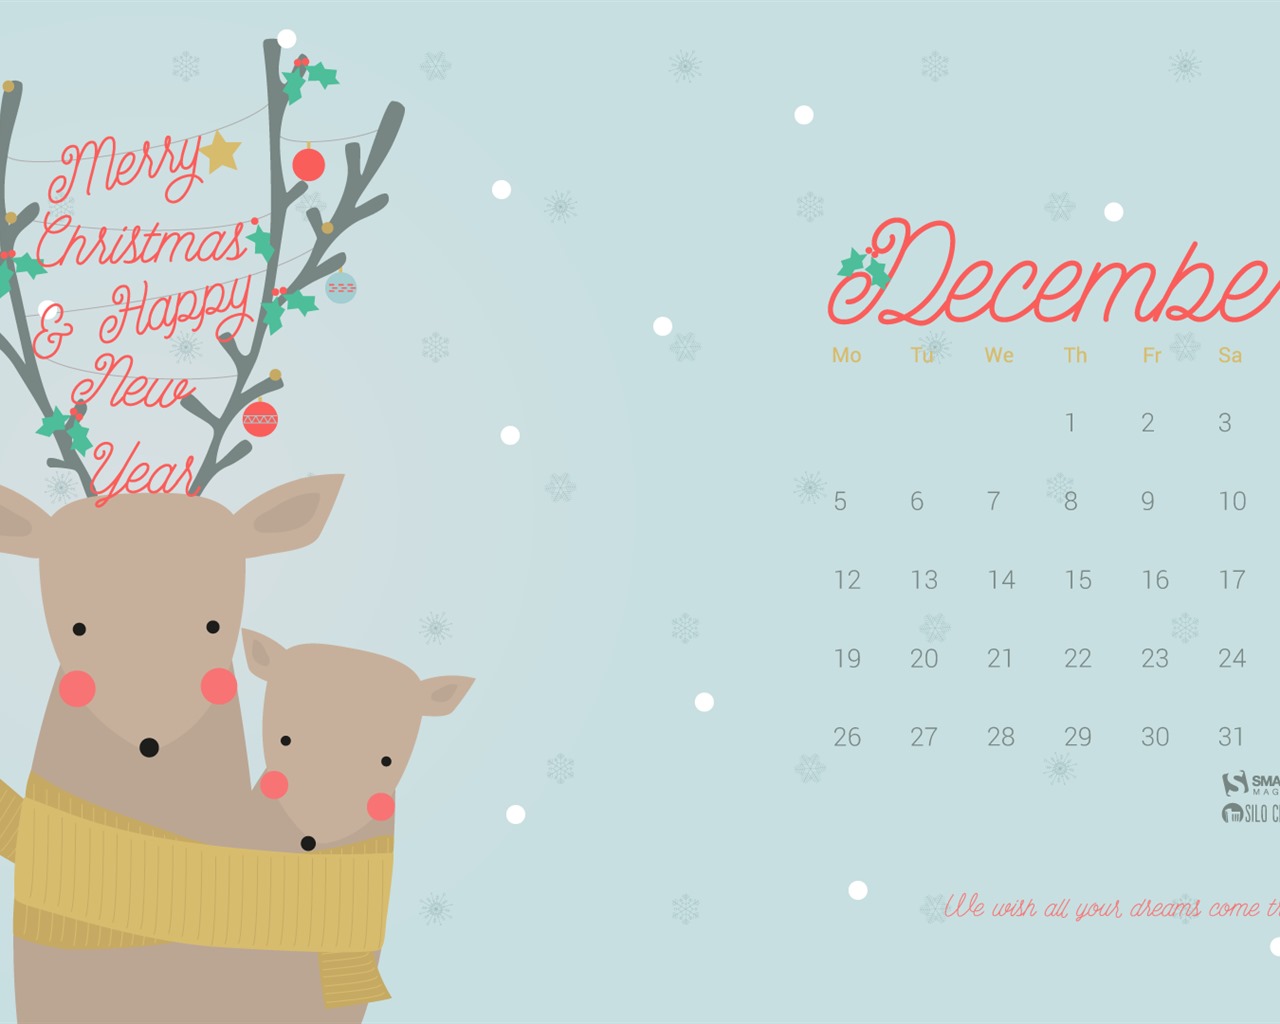 December 2016 Christmas theme calendar wallpaper (1) #10 - 1280x1024